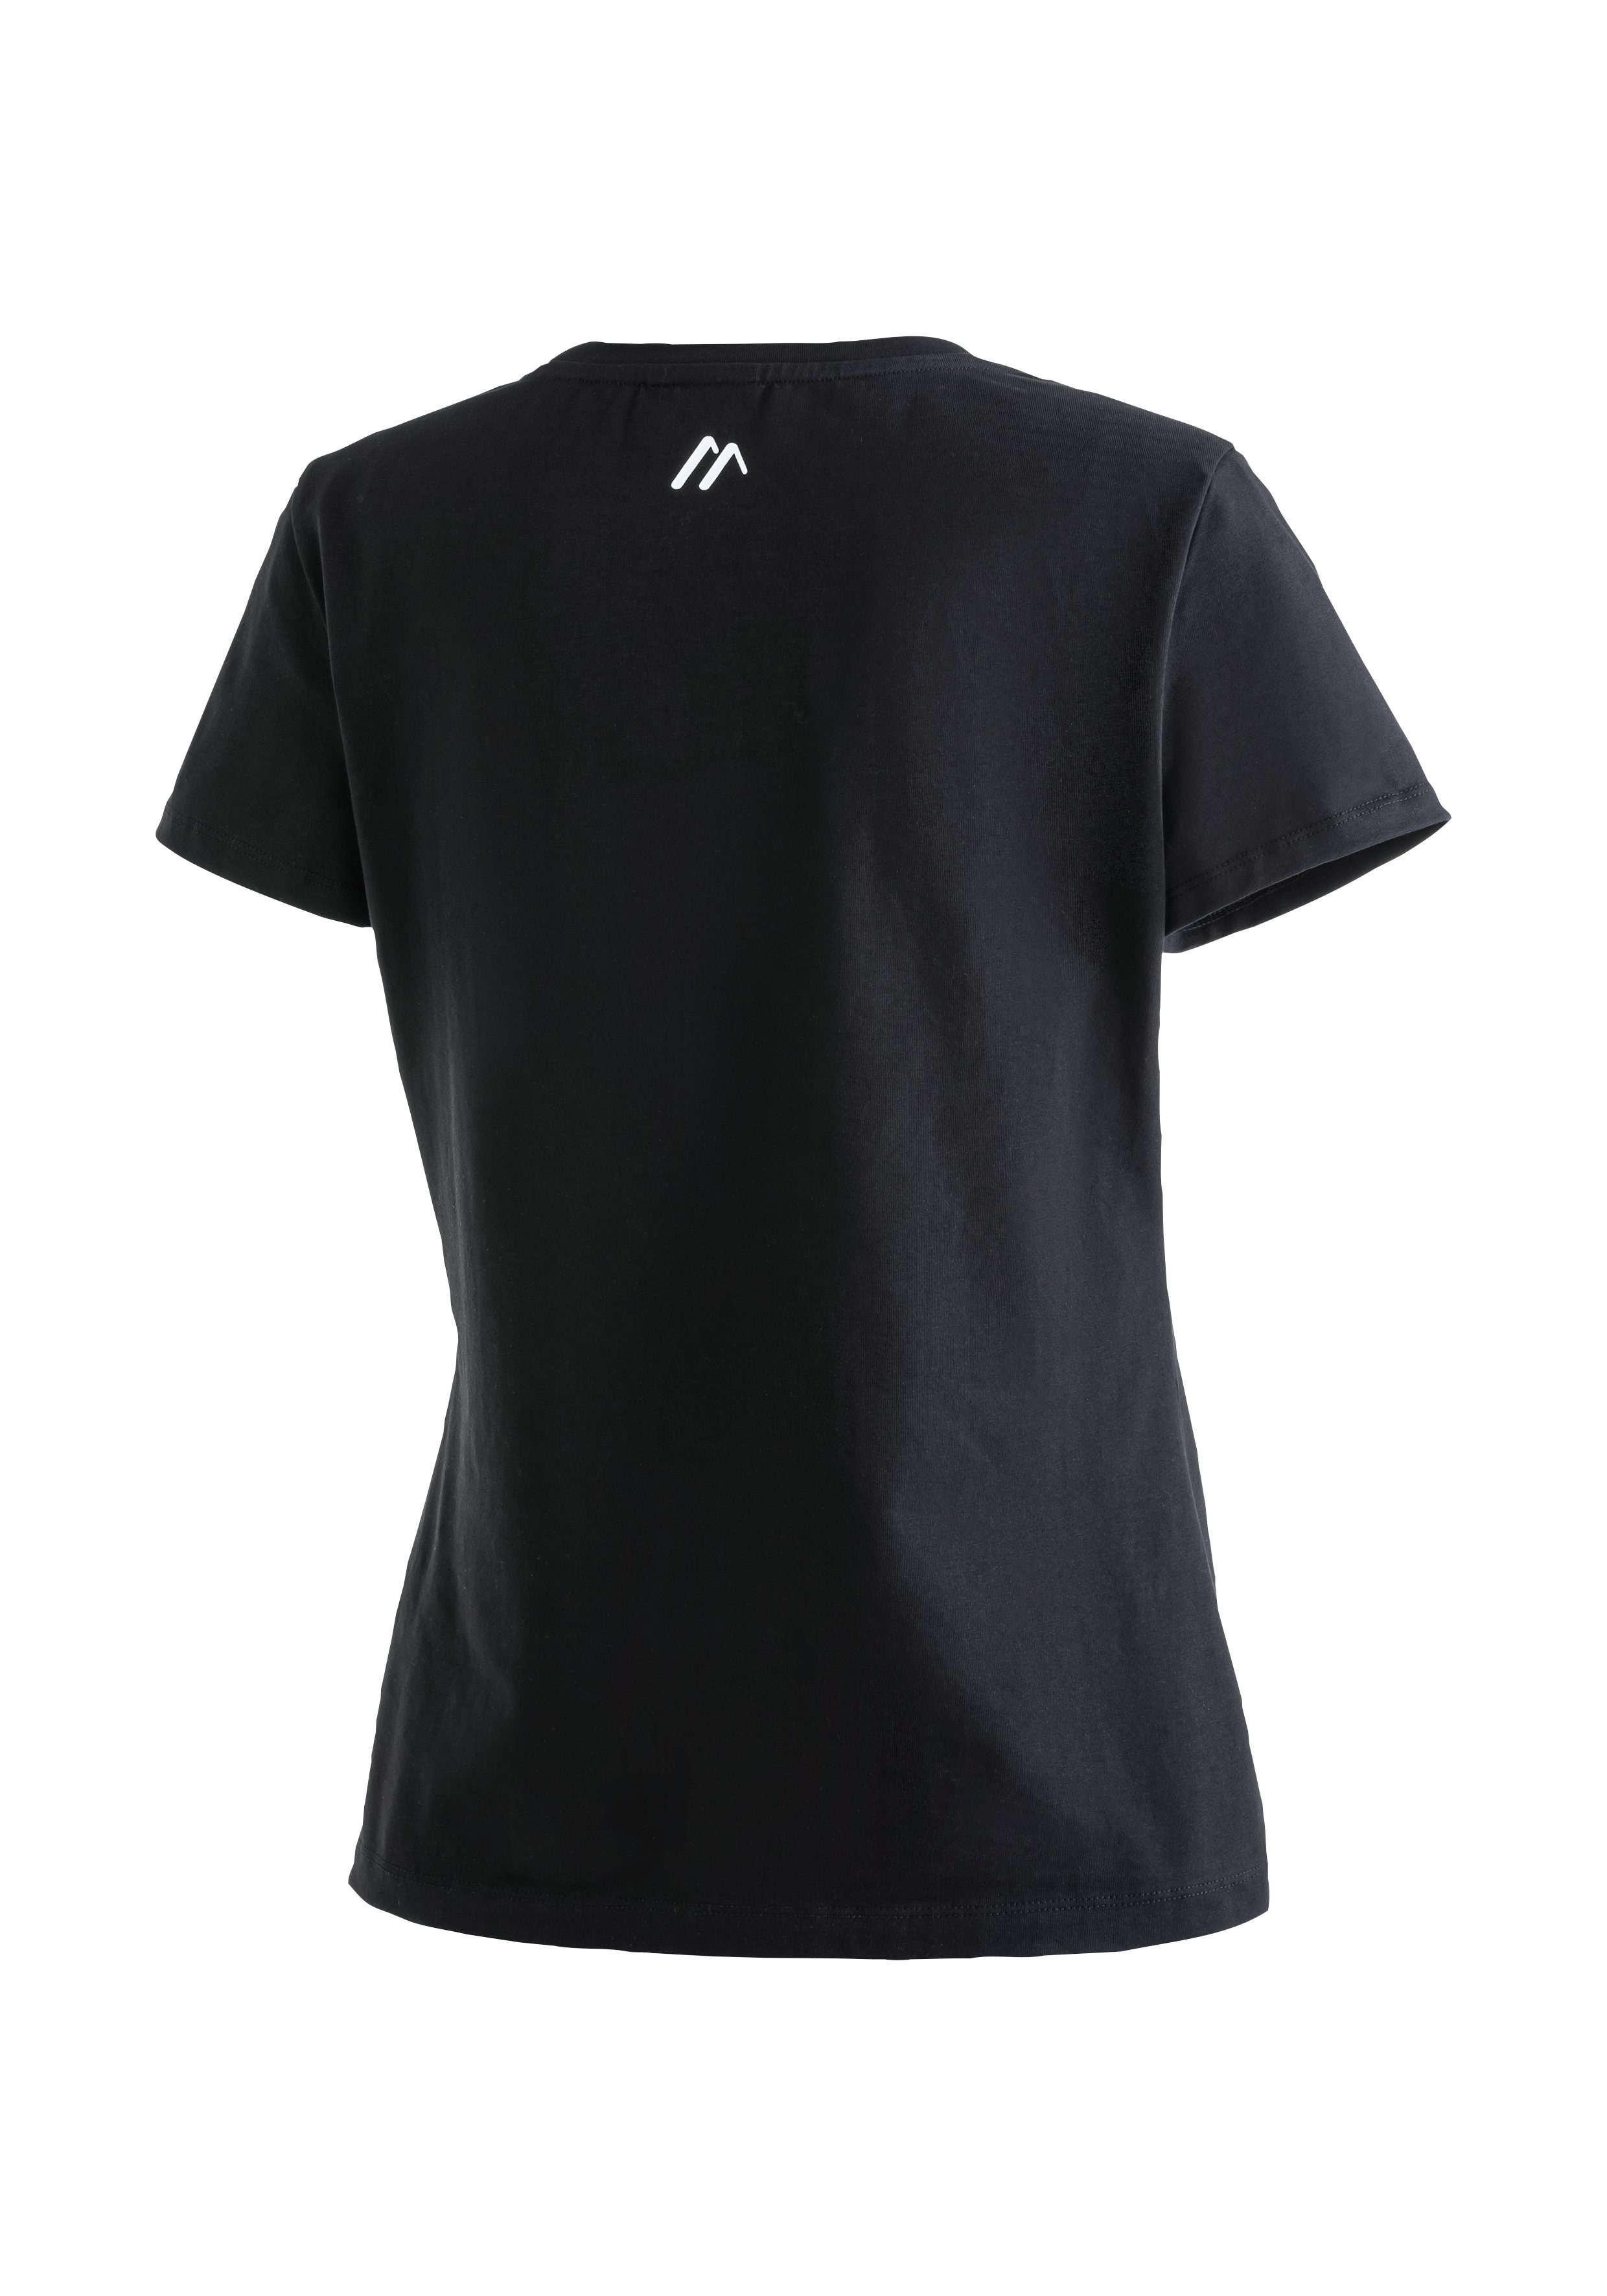 MS elastischem Tee aus Vielseitiges Material schwarz Maier Sports Funktionsshirt W Rundhalsshirt